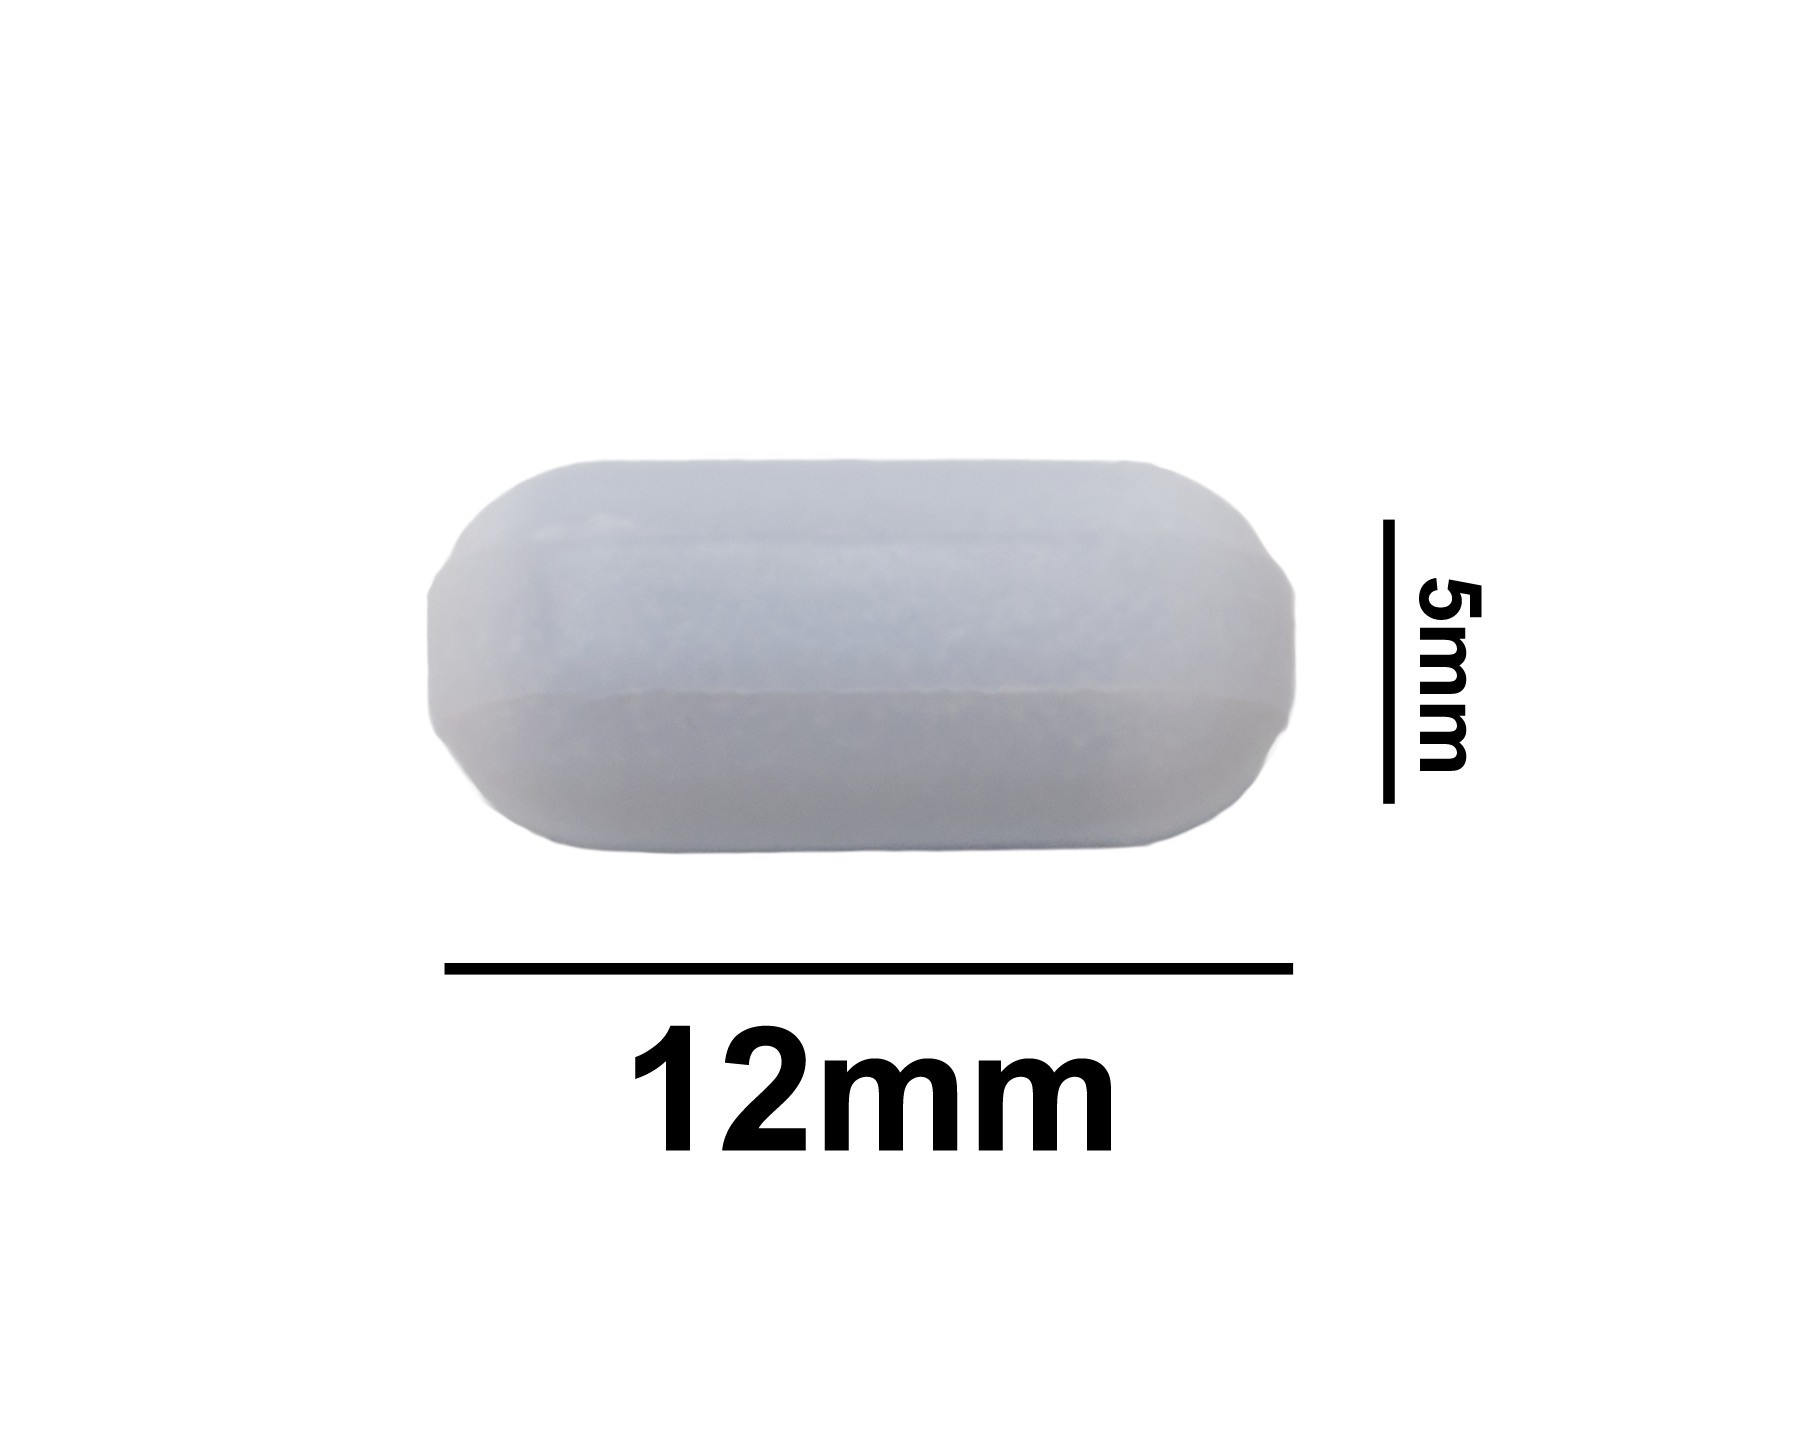 SP Bel-Art Spinbar Teflon Polygon Magnetic Stirring Bar; 12 x 5mm, White, without Pivot Ring